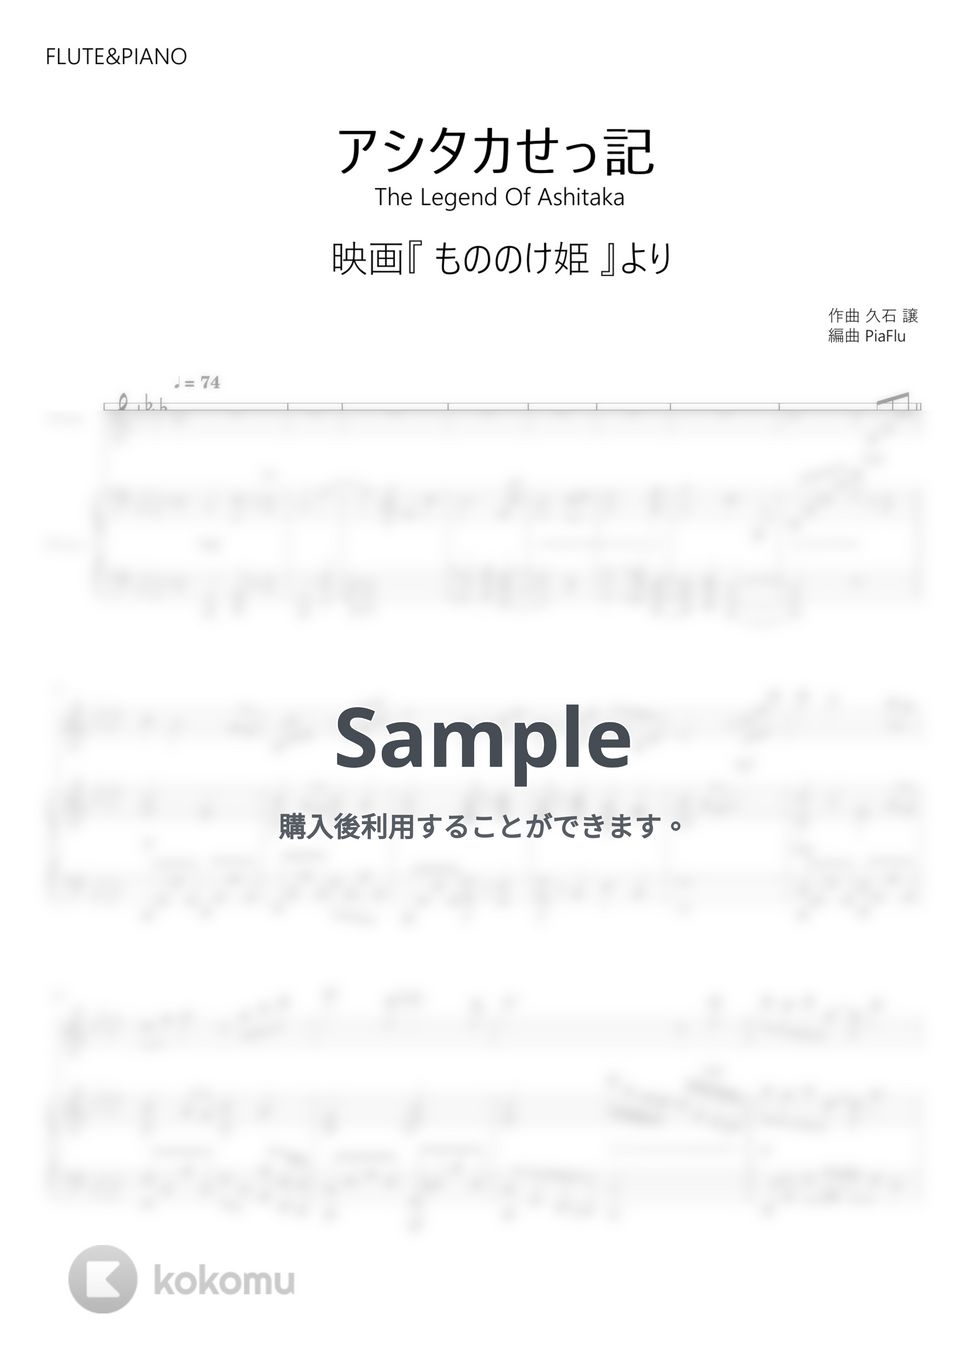 もののけ姫 - アシタカせっ記 (フルート&ピアノ伴奏) by PiaFlu